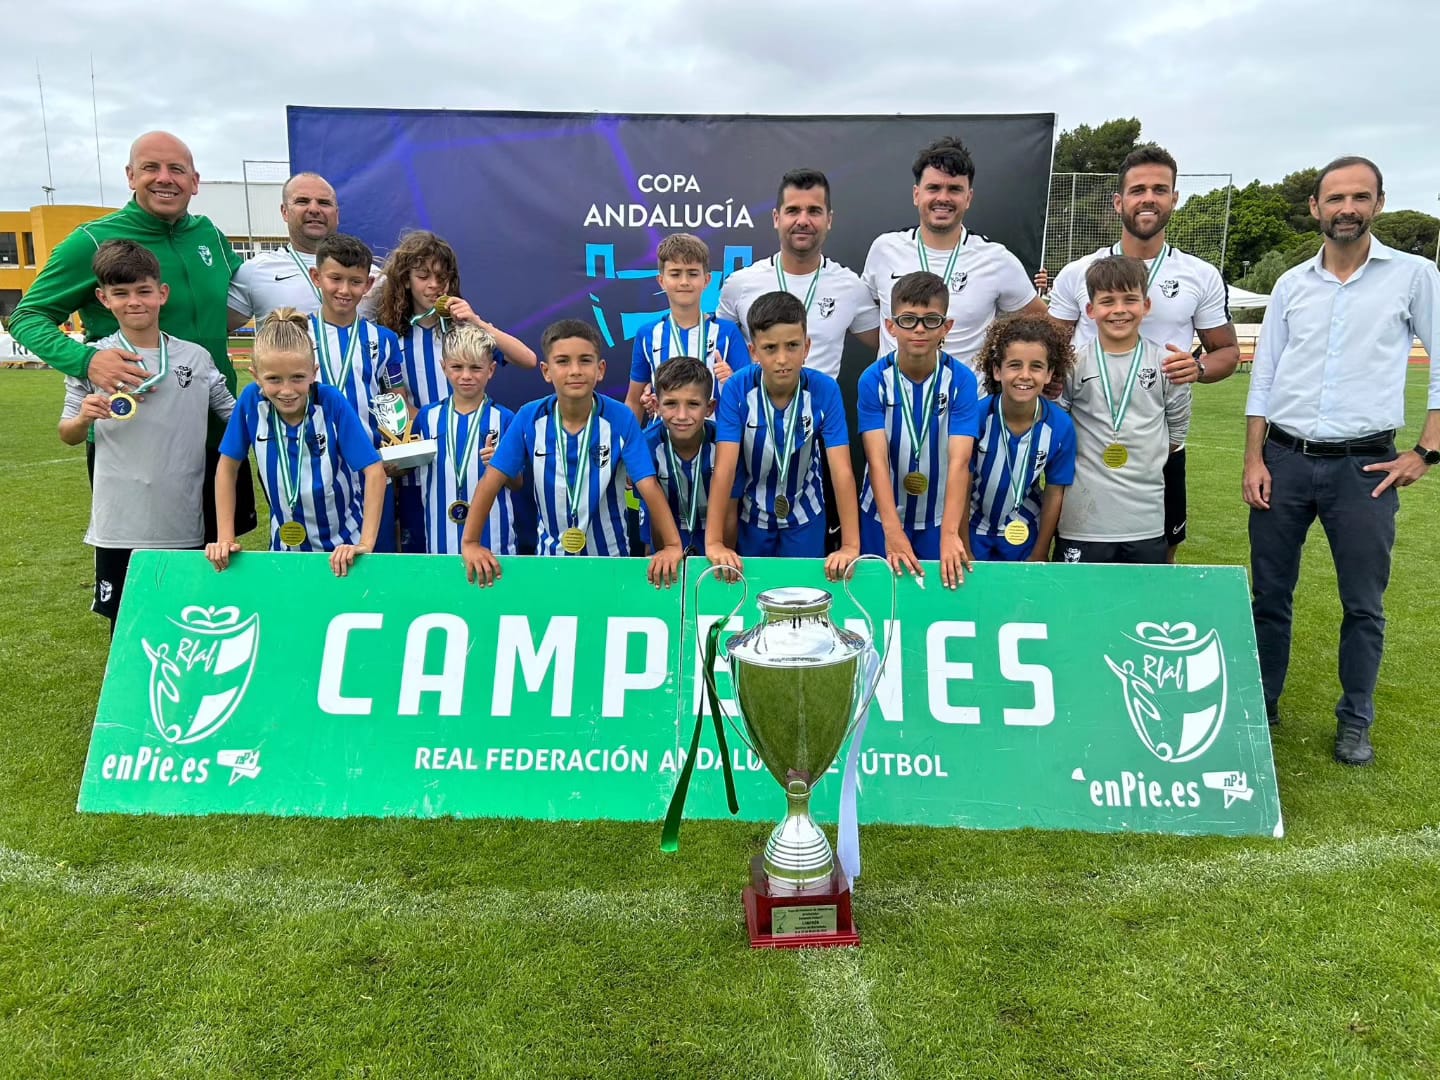 Sanlúcar de Barrameda acogía la Copa de Andalucía de Benjamines e Inclusivo, un evento que congregaba a los mejores talentos del fútbol de distintas provincias